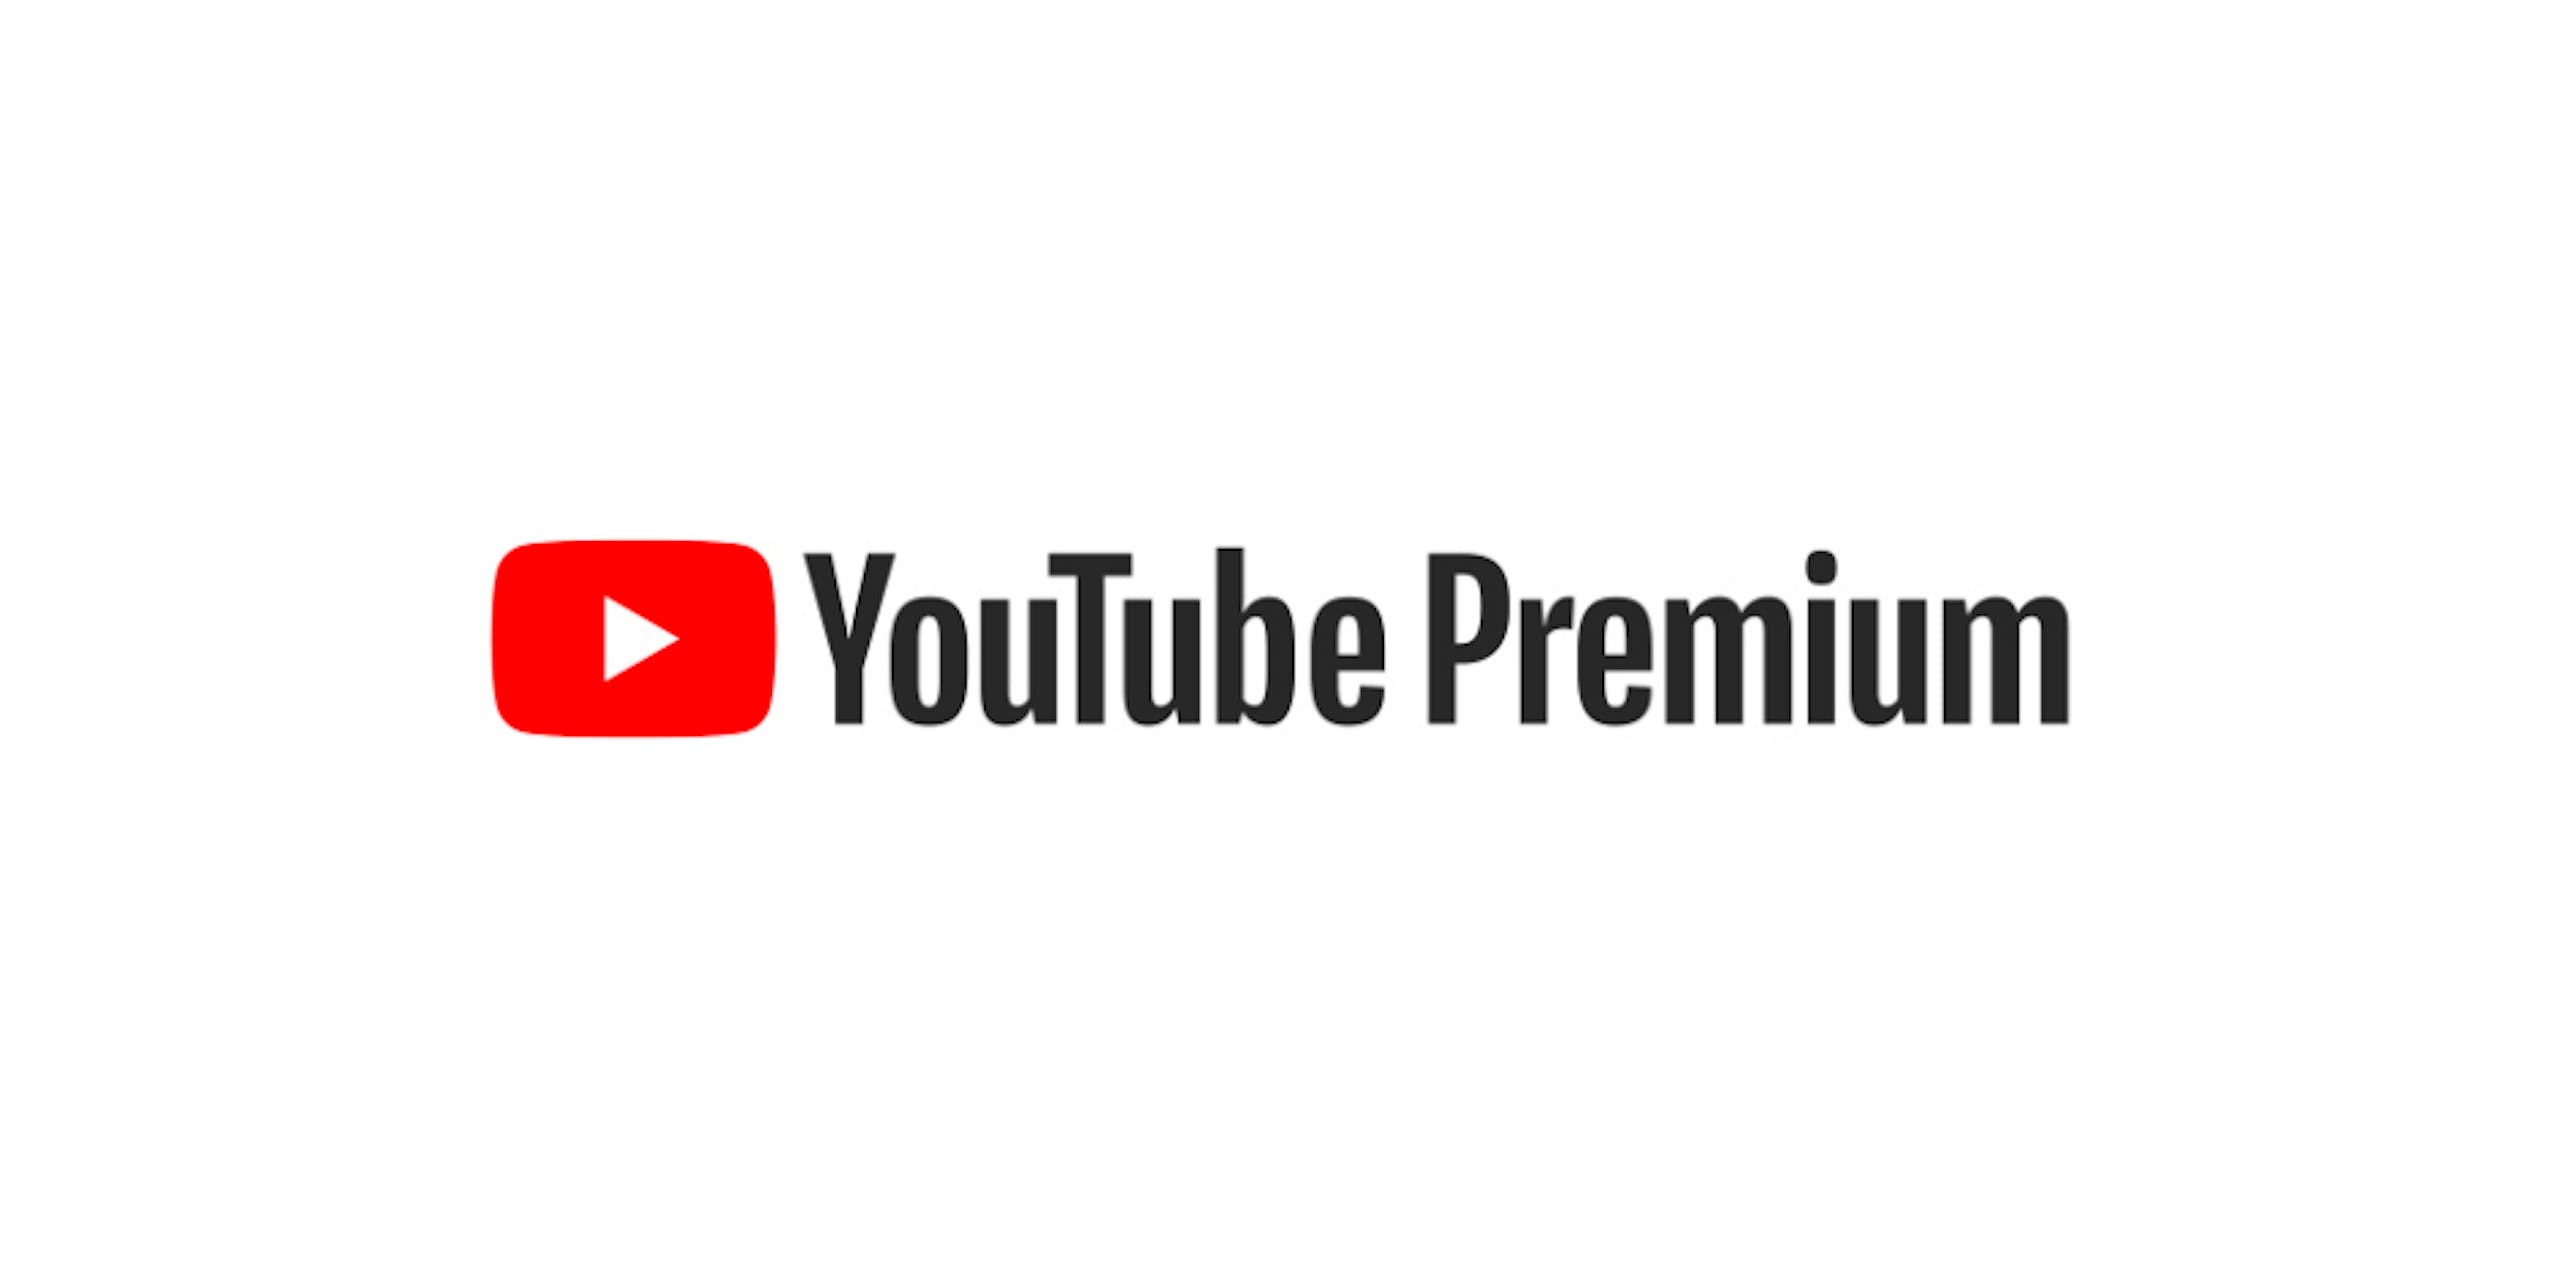 照片中提到了►YouTube Premium，跟的YouTube有關，包含了YouTube Premium、YouTube Premium、流媒體、YouTube音樂